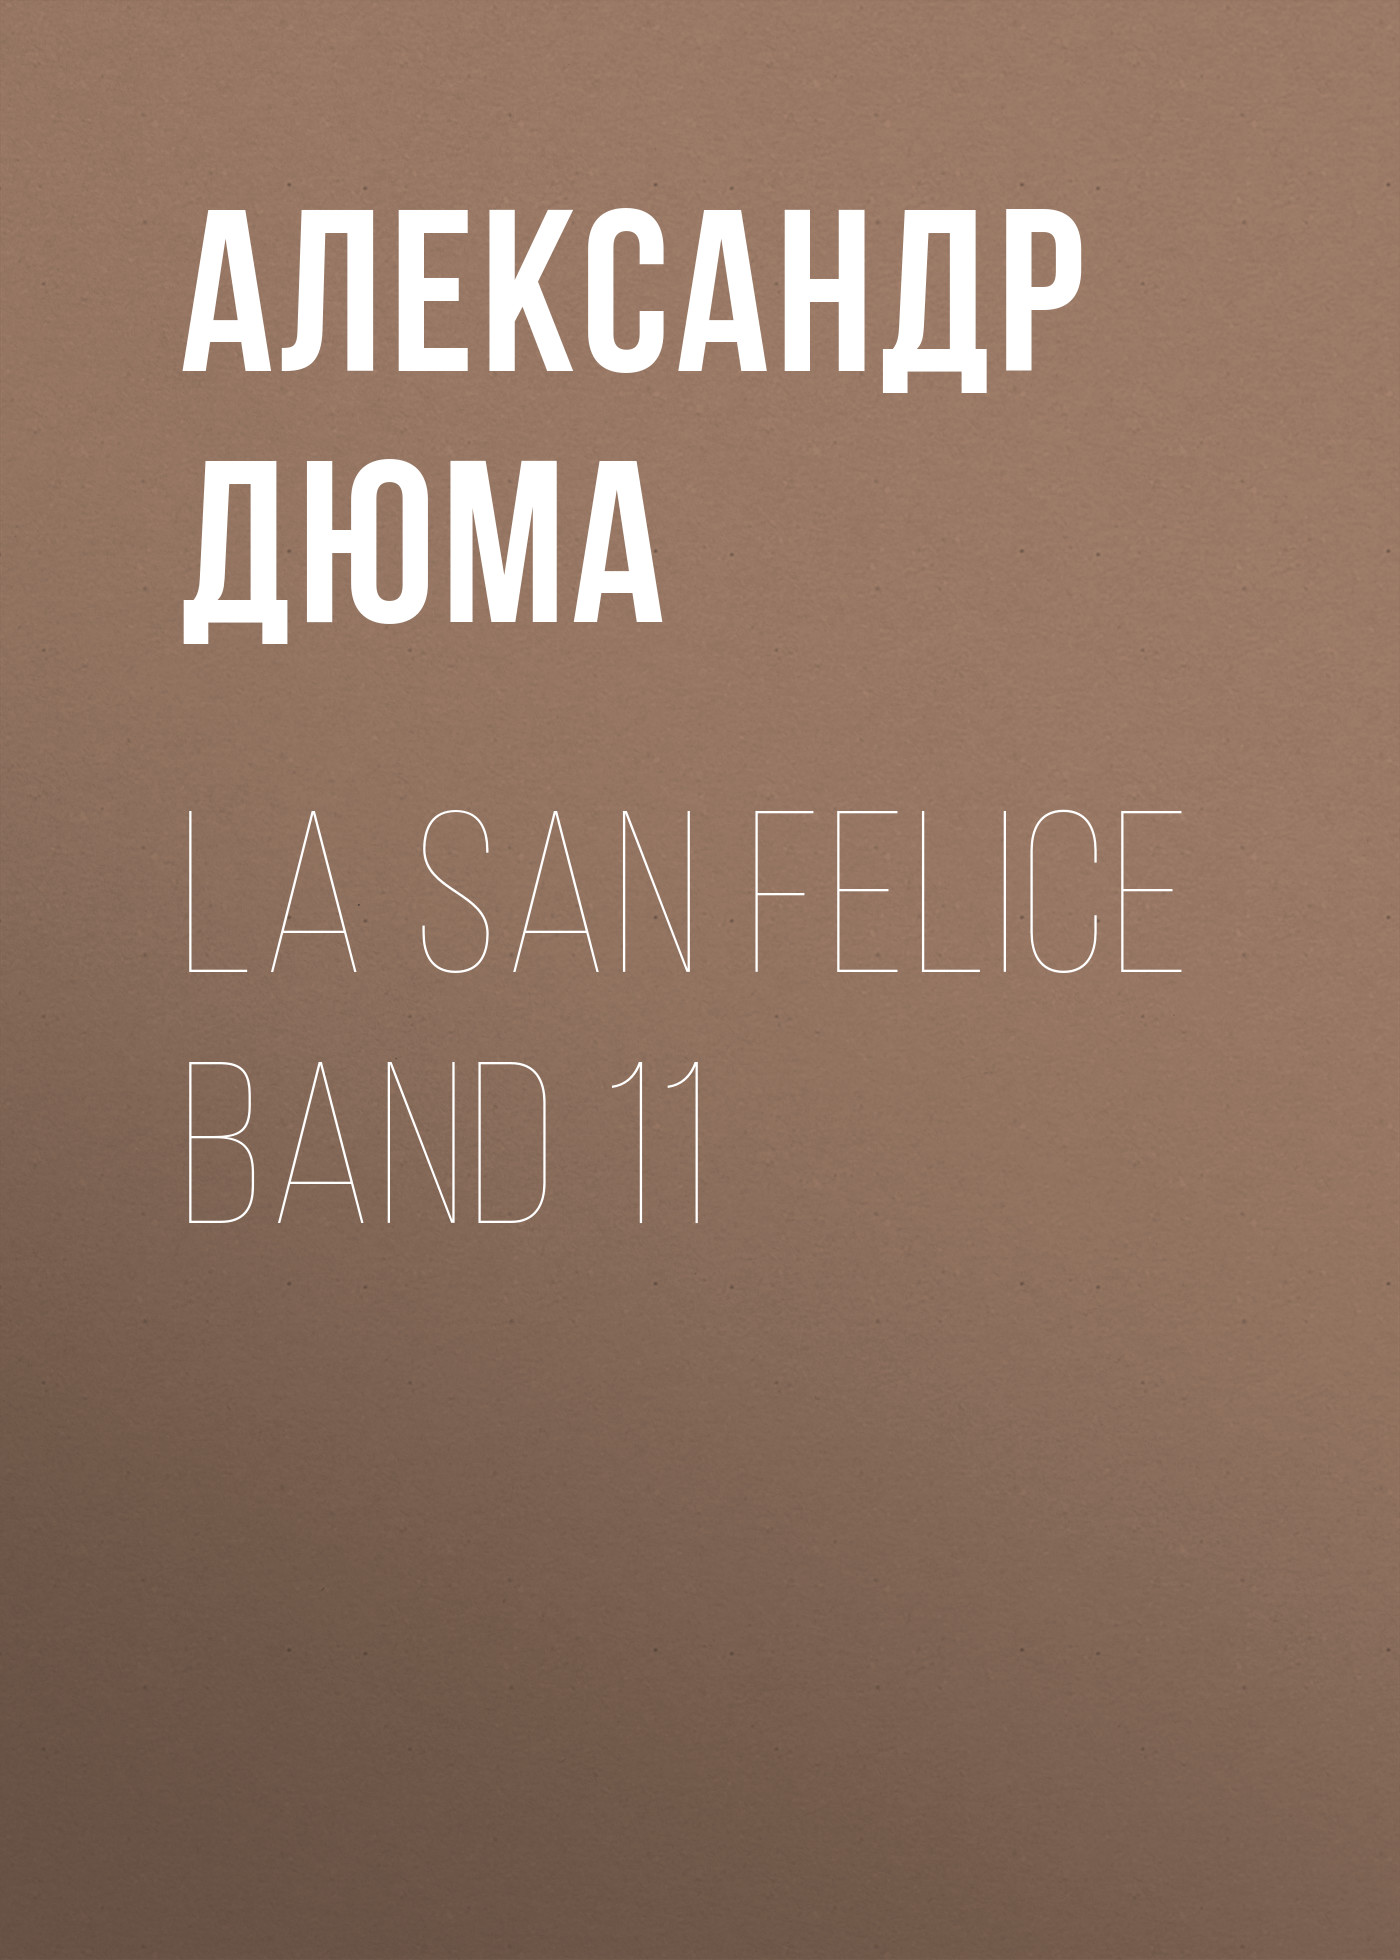 Книга La San Felice Band 11 из серии , созданная Alexandre Dumas der Ältere, может относится к жанру Зарубежная классика. Стоимость электронной книги La San Felice Band 11 с идентификатором 48632740 составляет 0 руб.